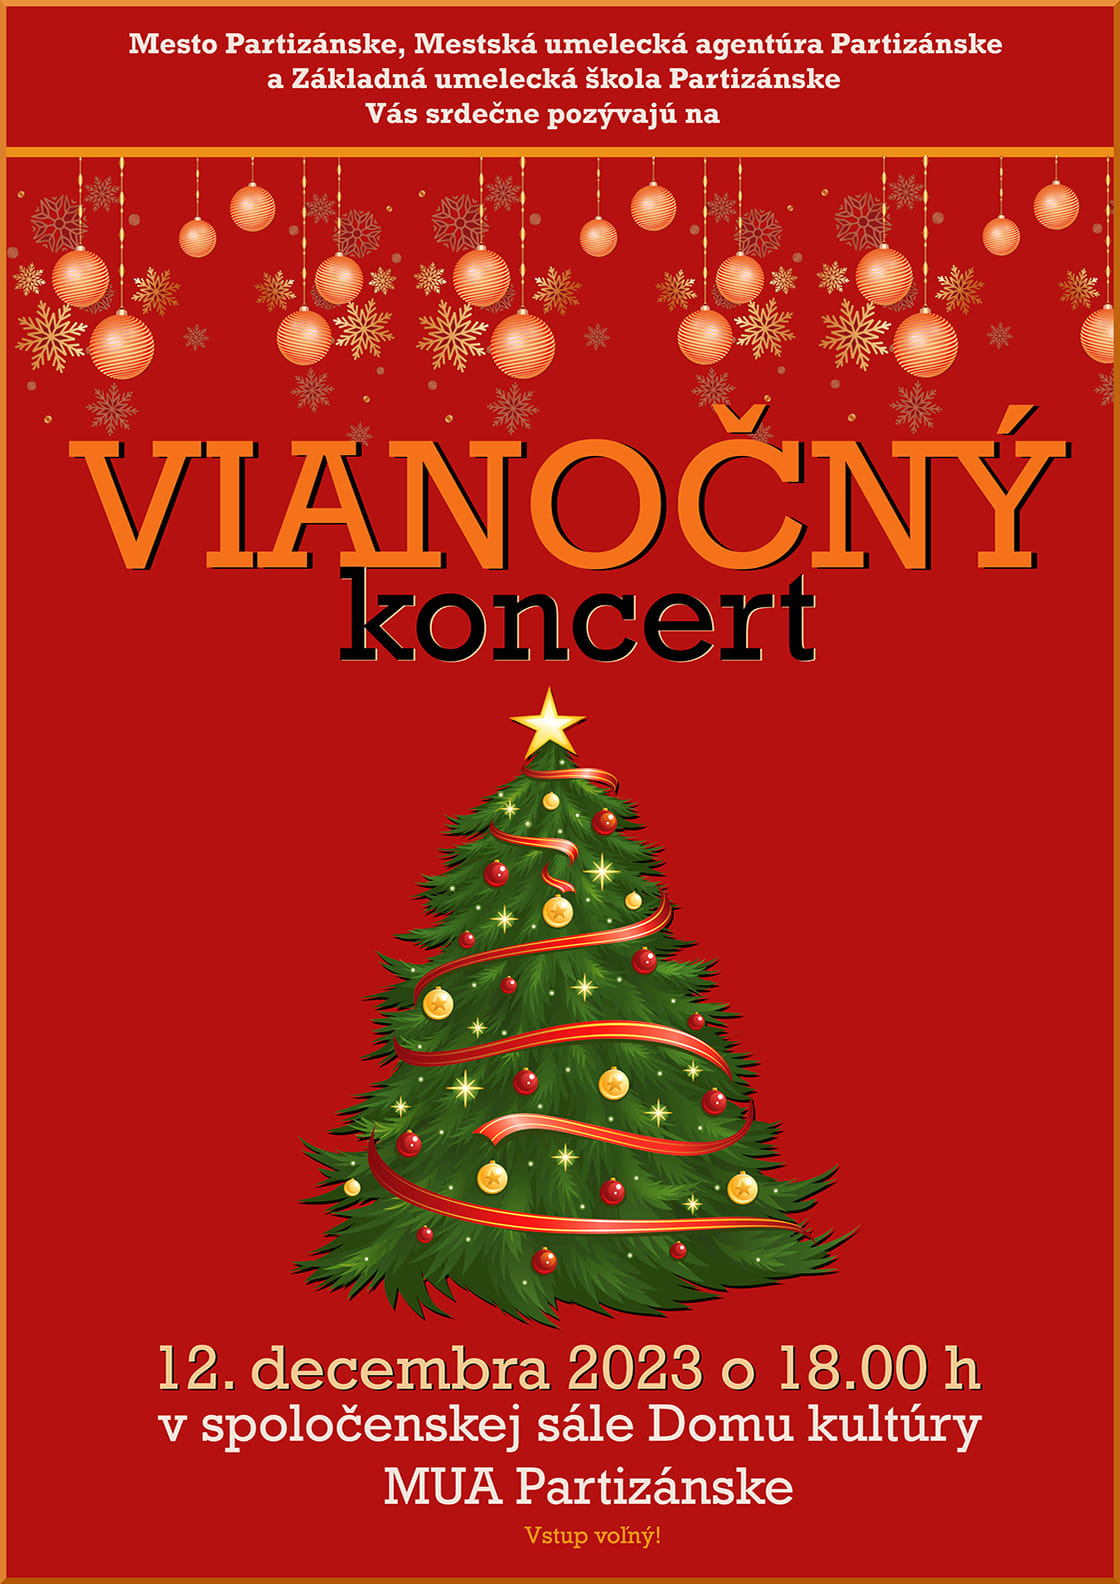 Vianočný koncert ZUŠ Partizánske @ Spoločenská sála Domu kultúry